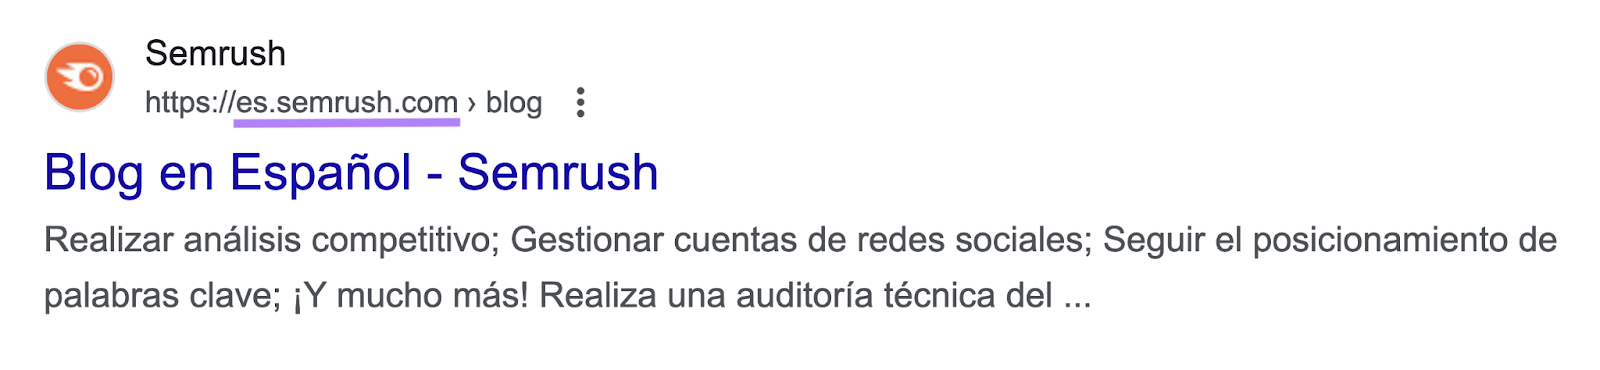 Google's result for “semrush blog” in Spain